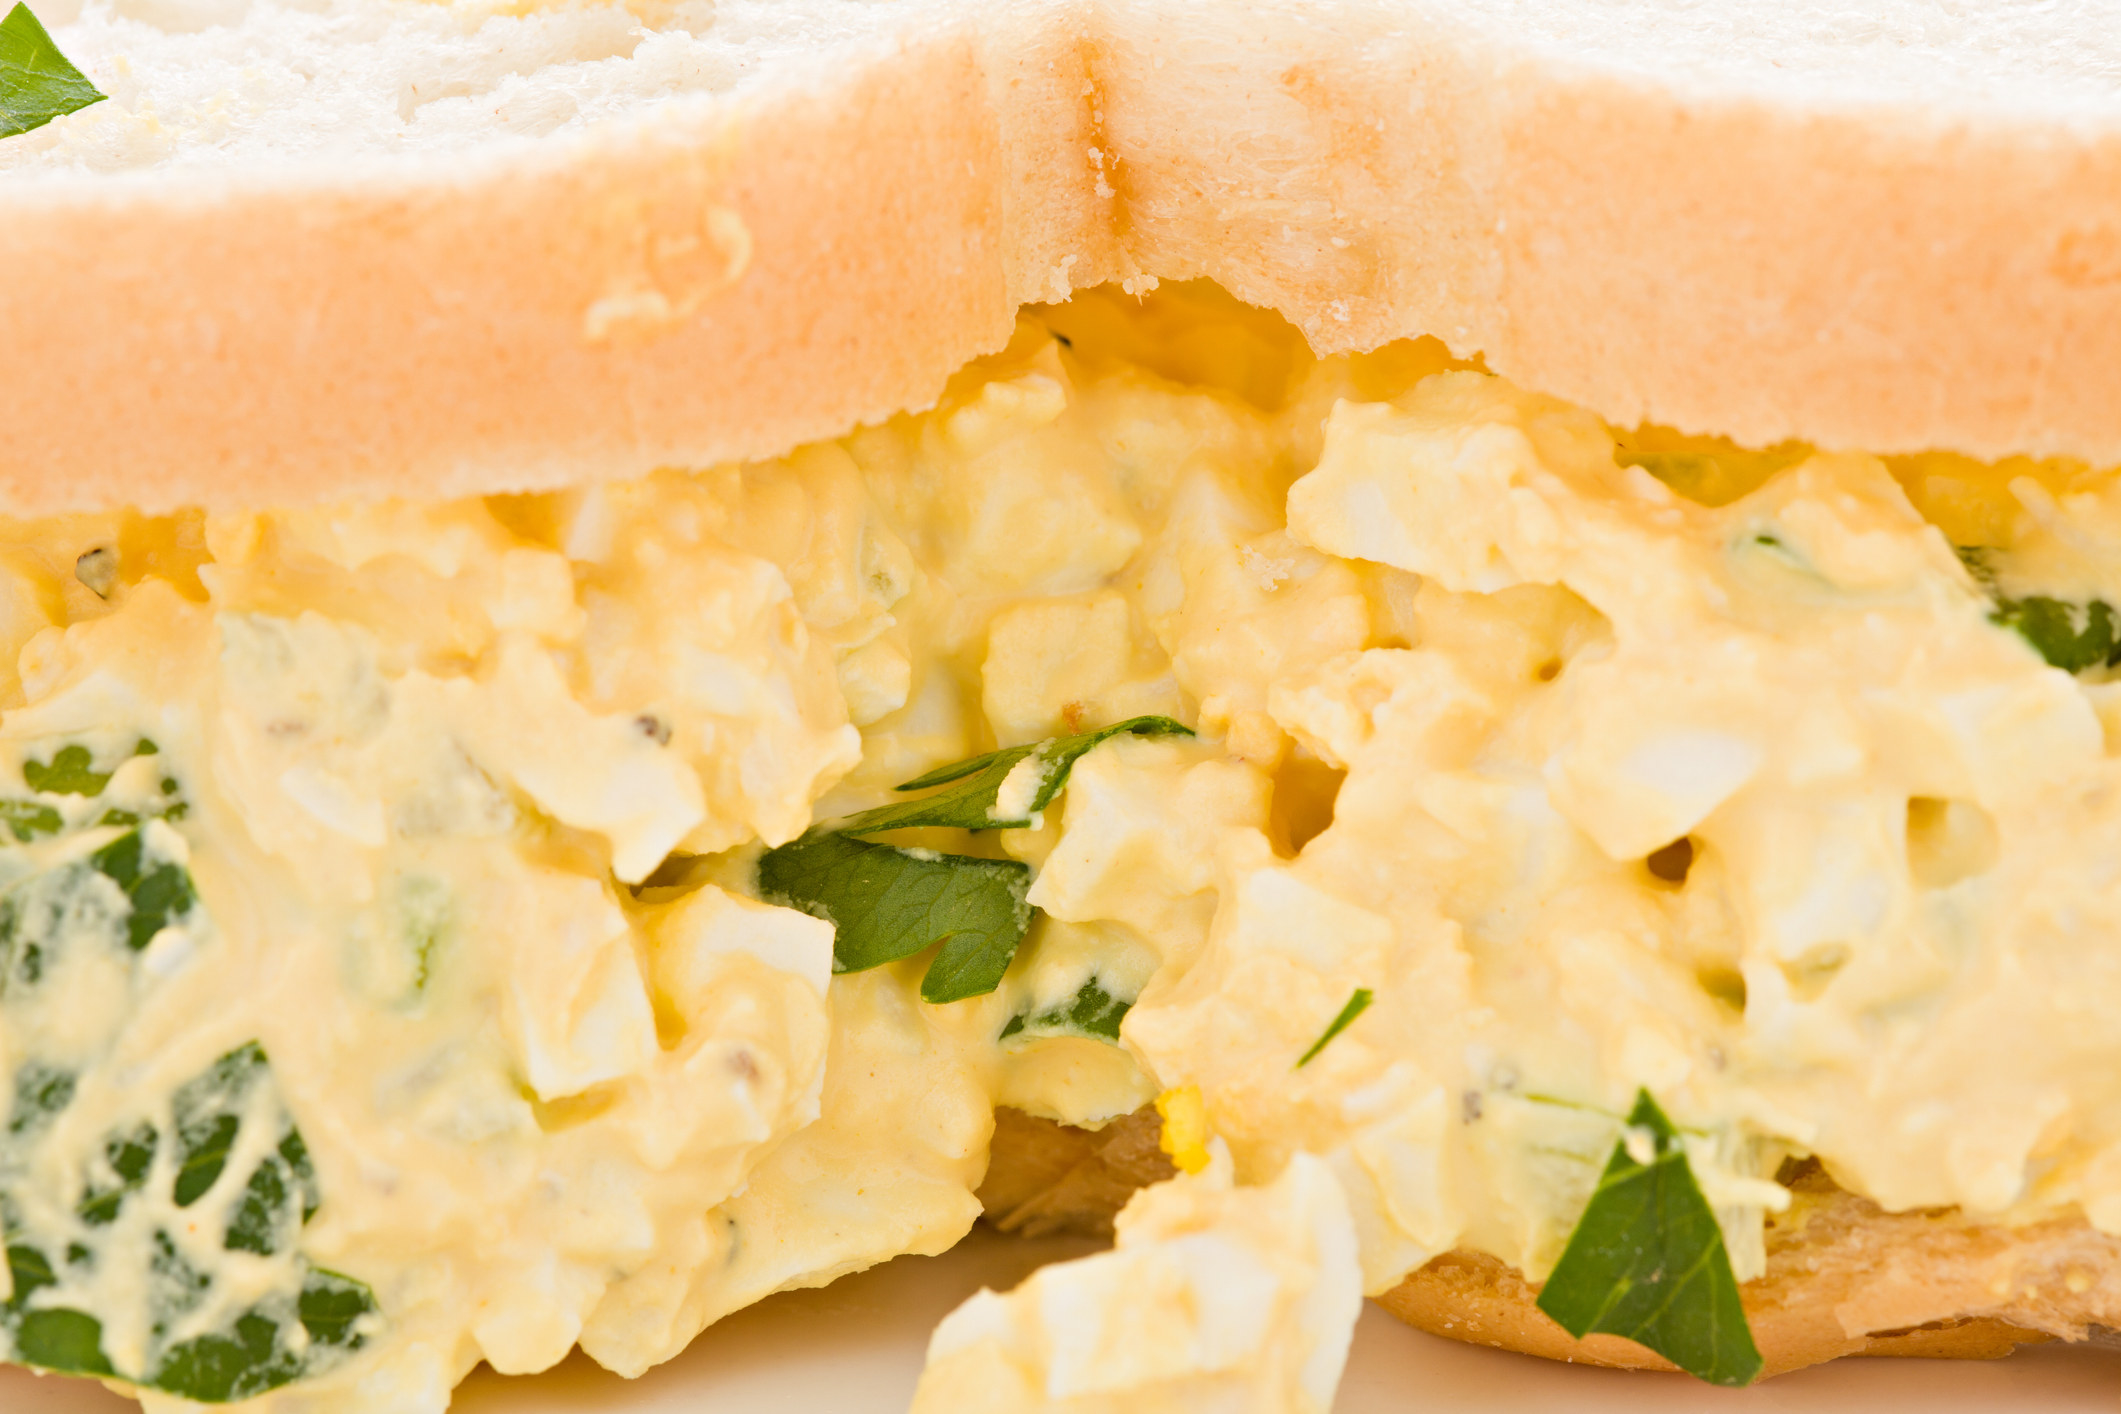 Close-up of an egg salad sandwich